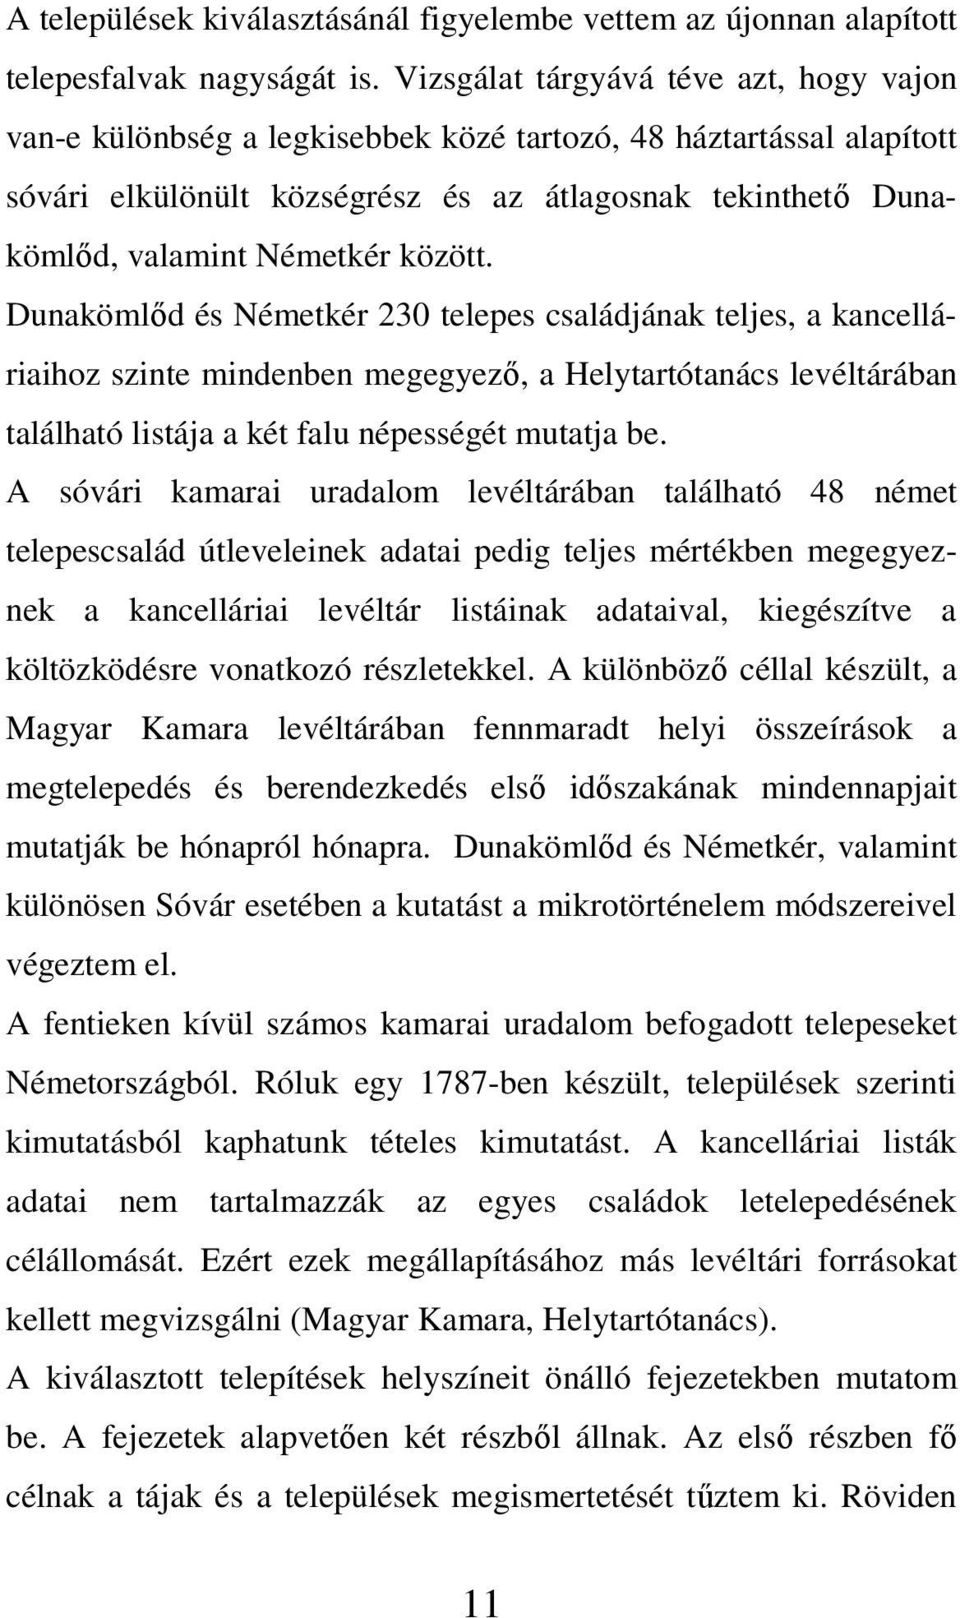 között. Dunakömlőd és Németkér 230 telepes családjának teljes, a kancelláriaihoz szinte mindenben megegyező, a Helytartótanács levéltárában található listája a két falu népességét mutatja be.